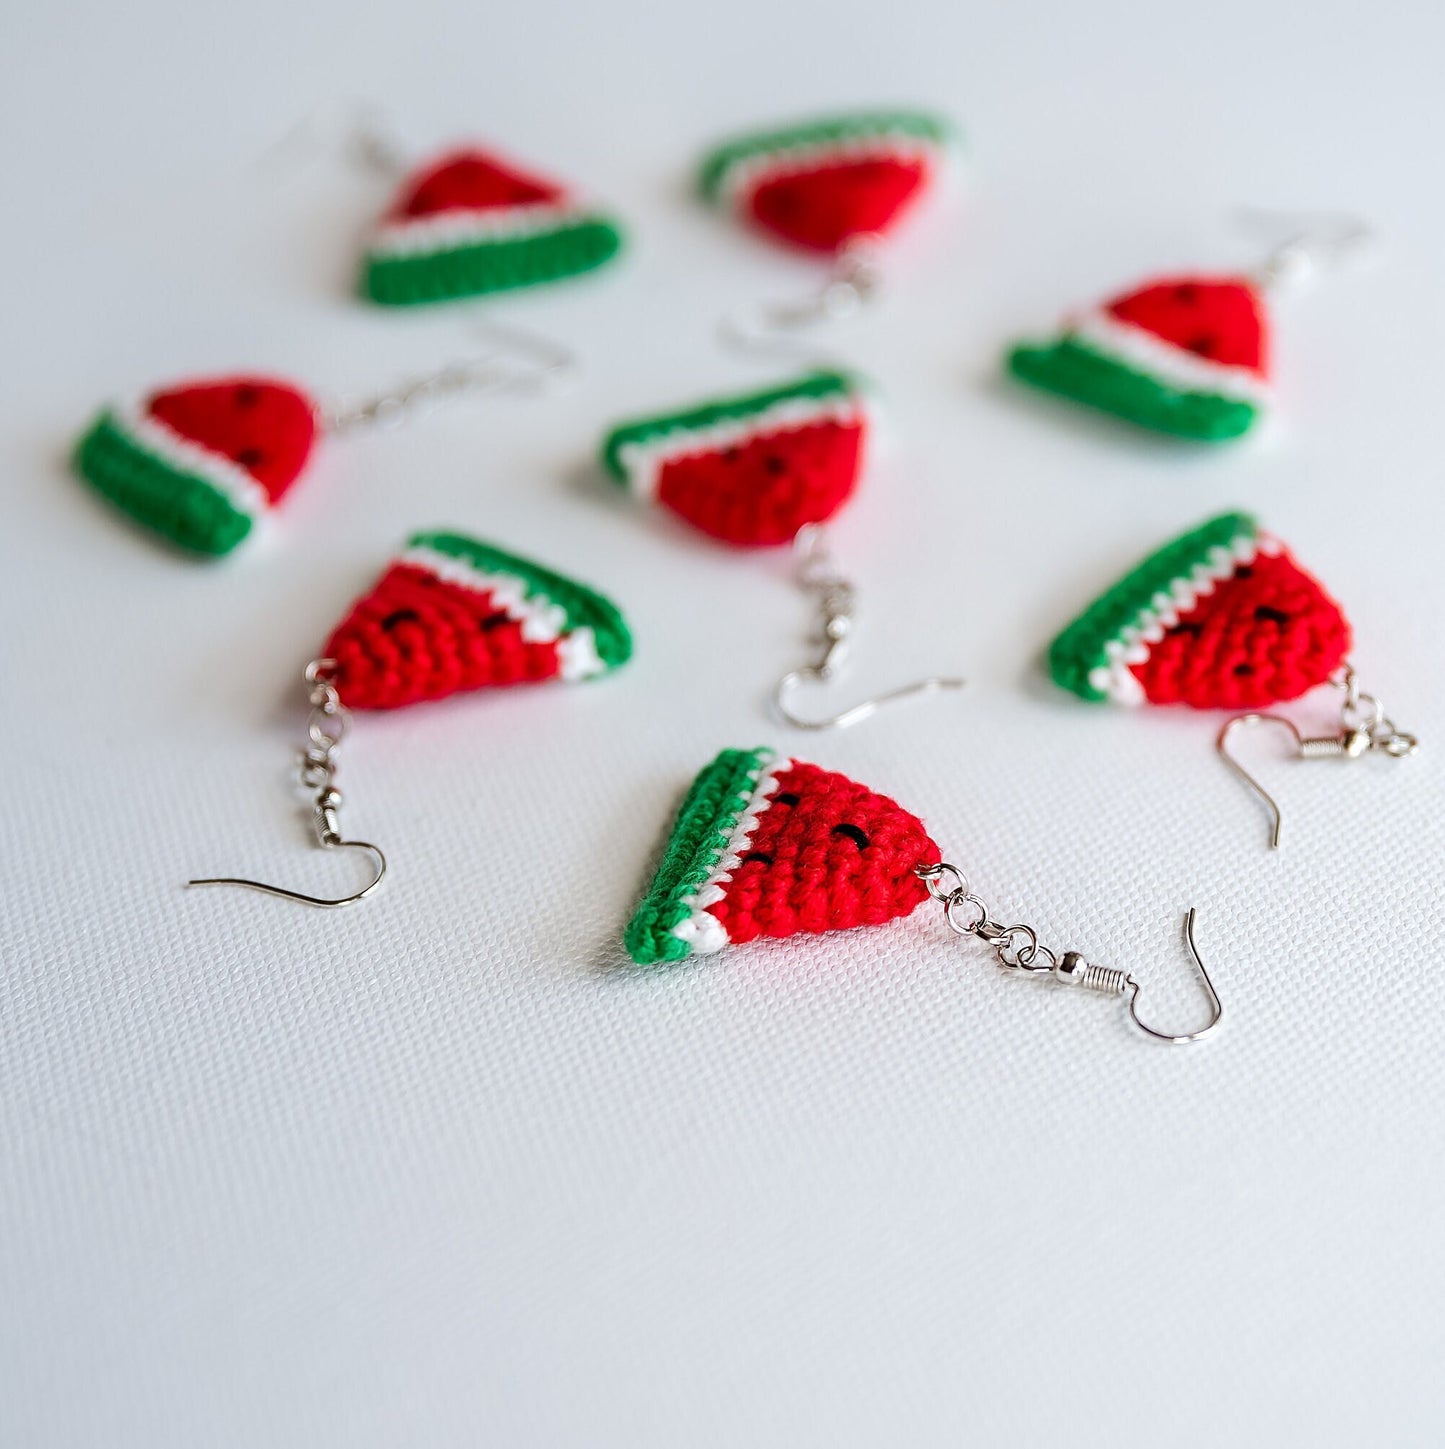 Watermelon Earrings Watermelon Slice Earrings Crochet Earrings Crochet Melon Earrings Cute Fruit Earrings Boho Jewelry Fun Fruit Jewelry